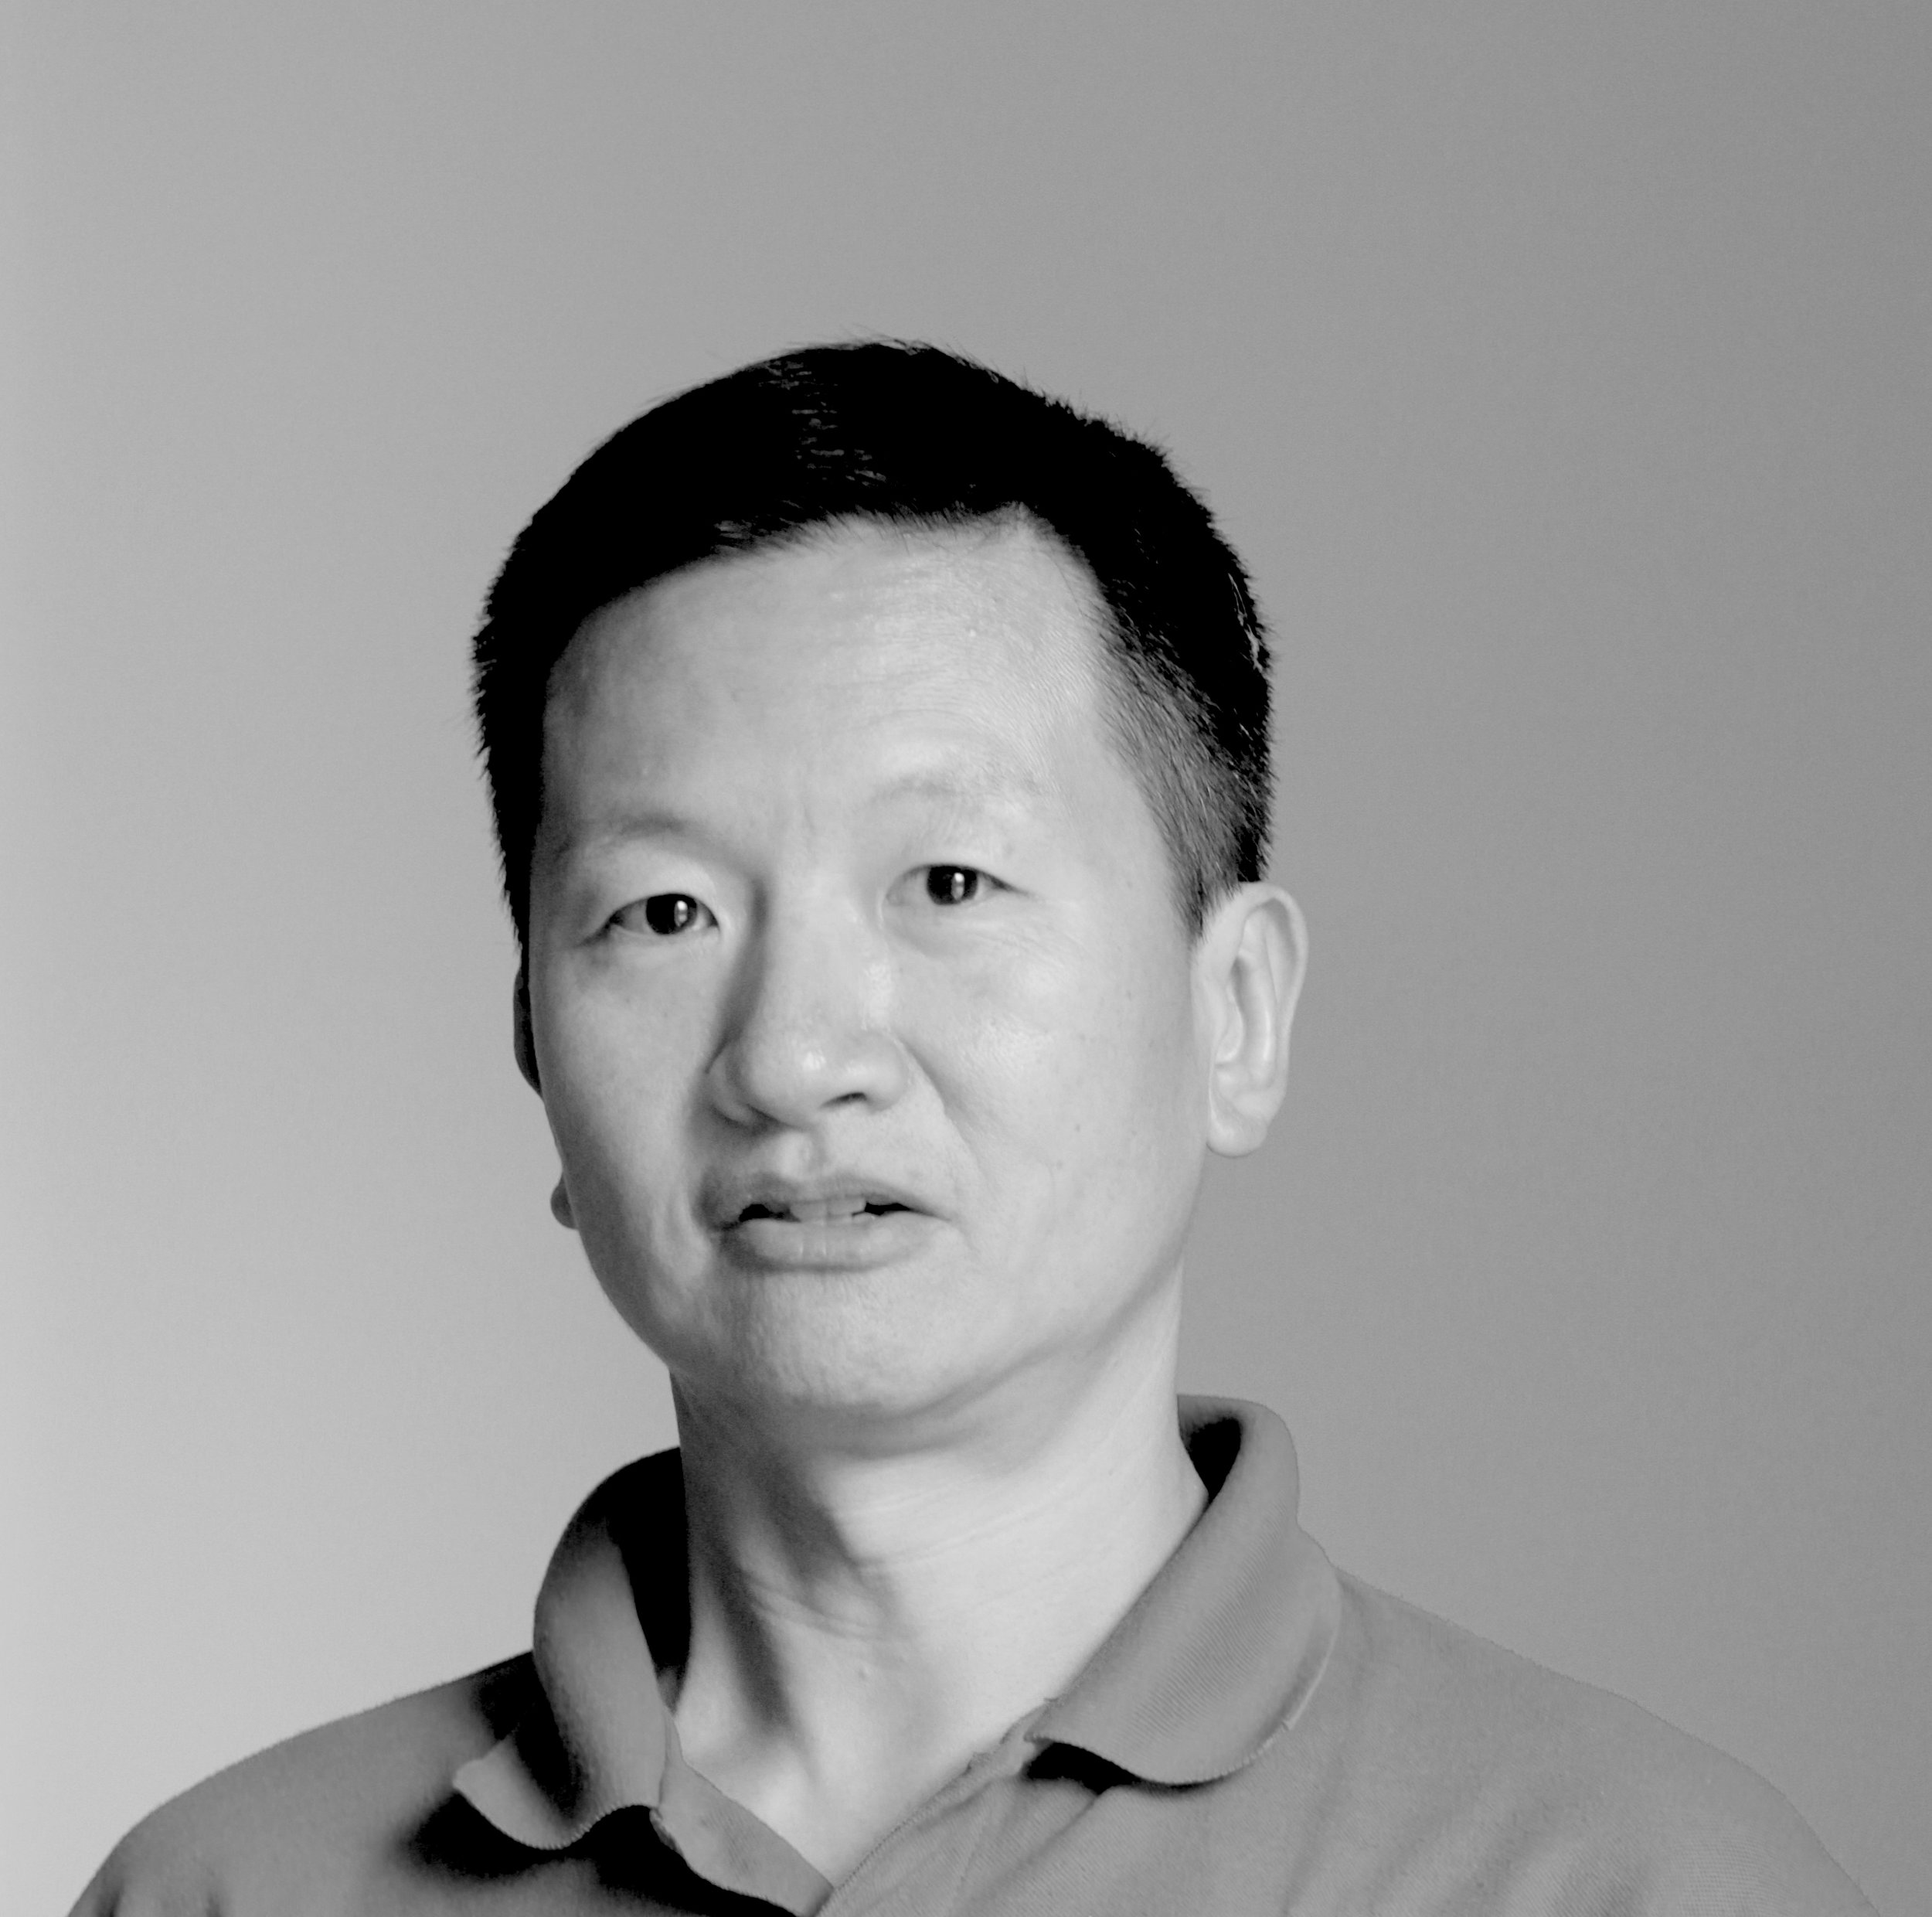 Peter Han